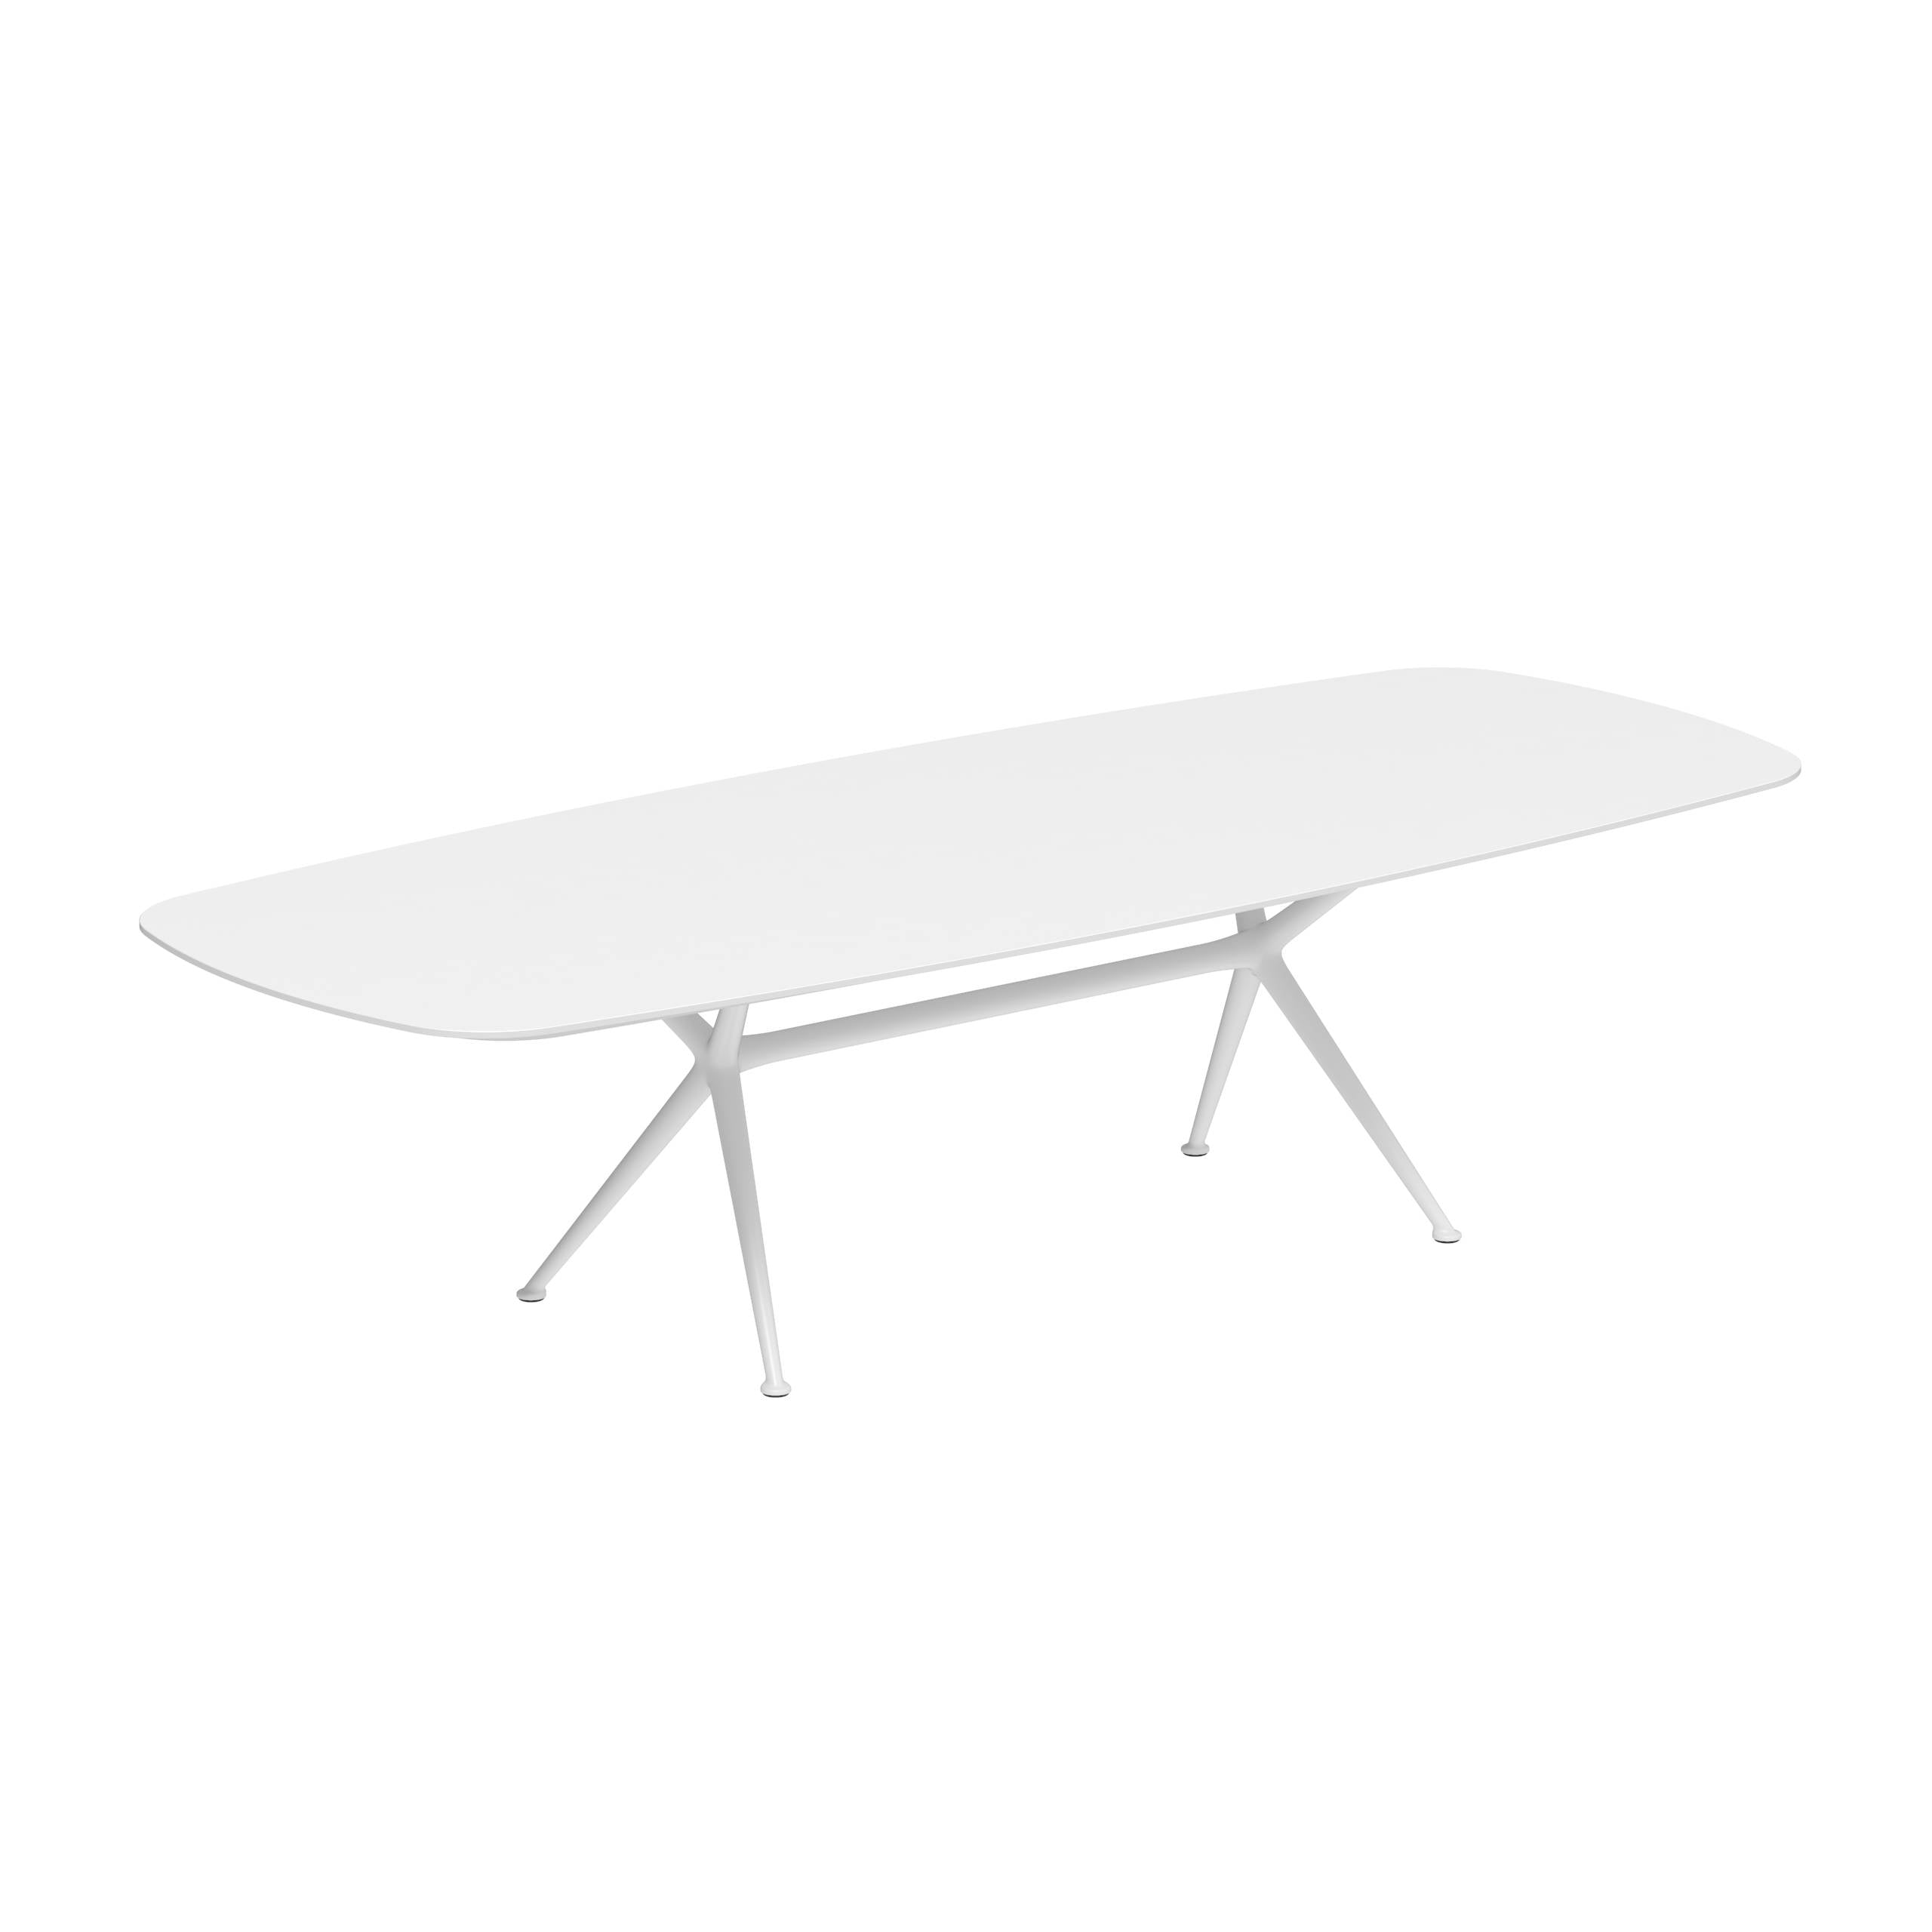 Exes Table 300x120cm Alu Legs White - Table Top Ceramic White